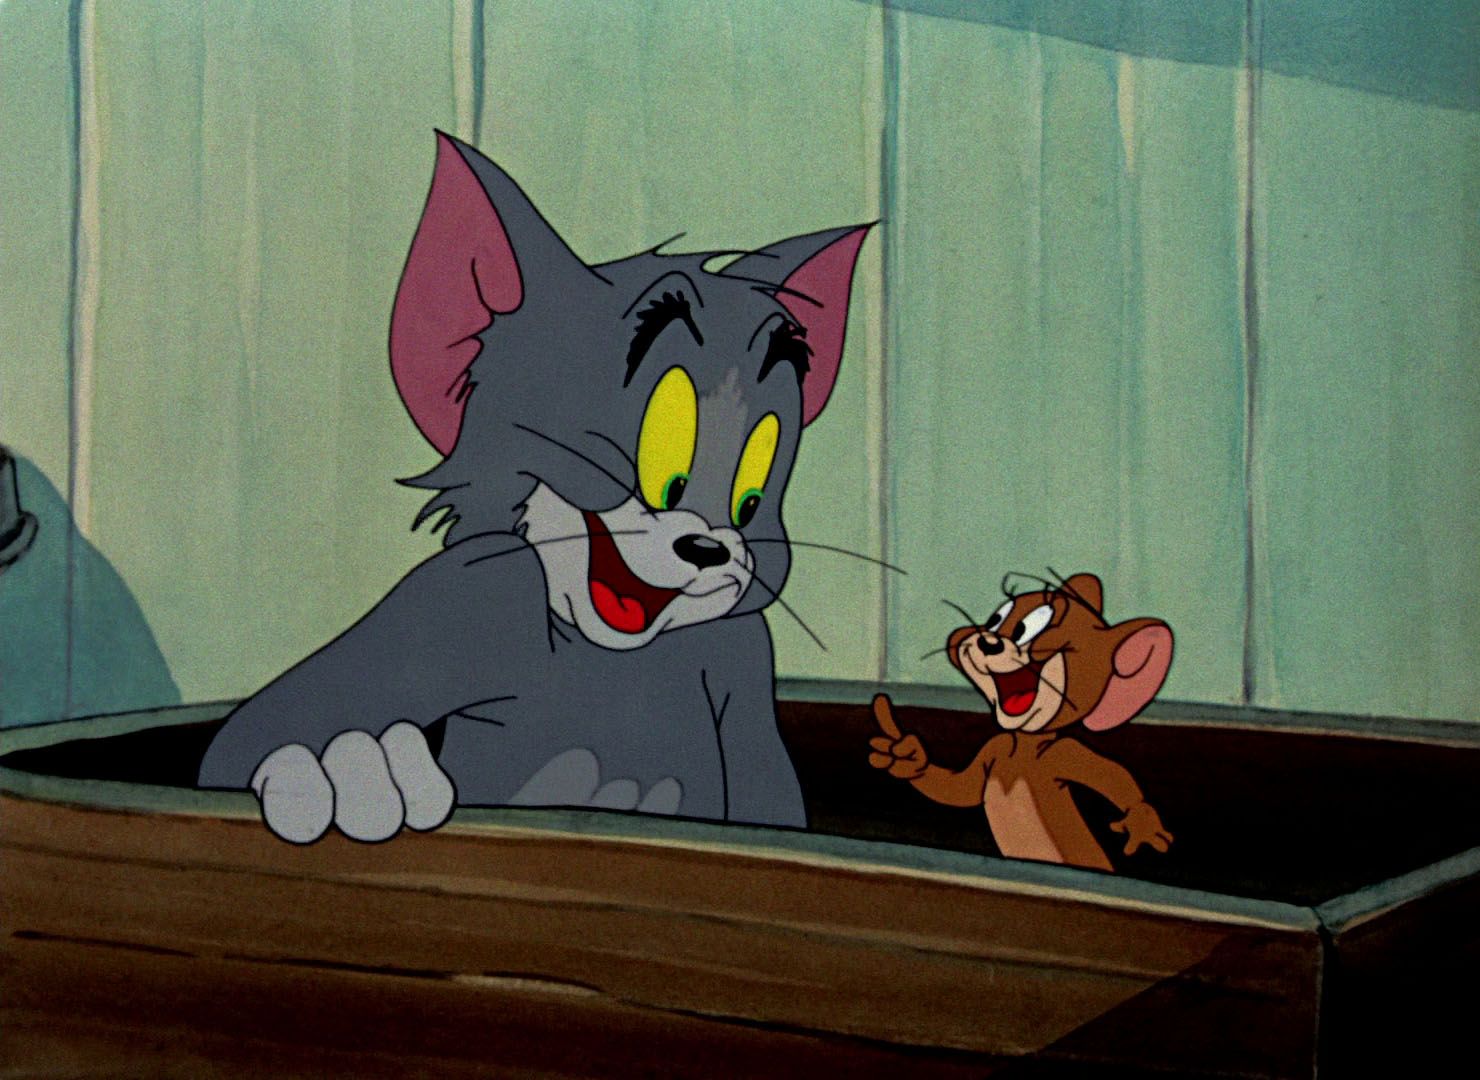 Читай том и ход. Том и Джерри 1960. Том и Джерри (Tom and Jerry) 1940. Том и Джерри 1996.